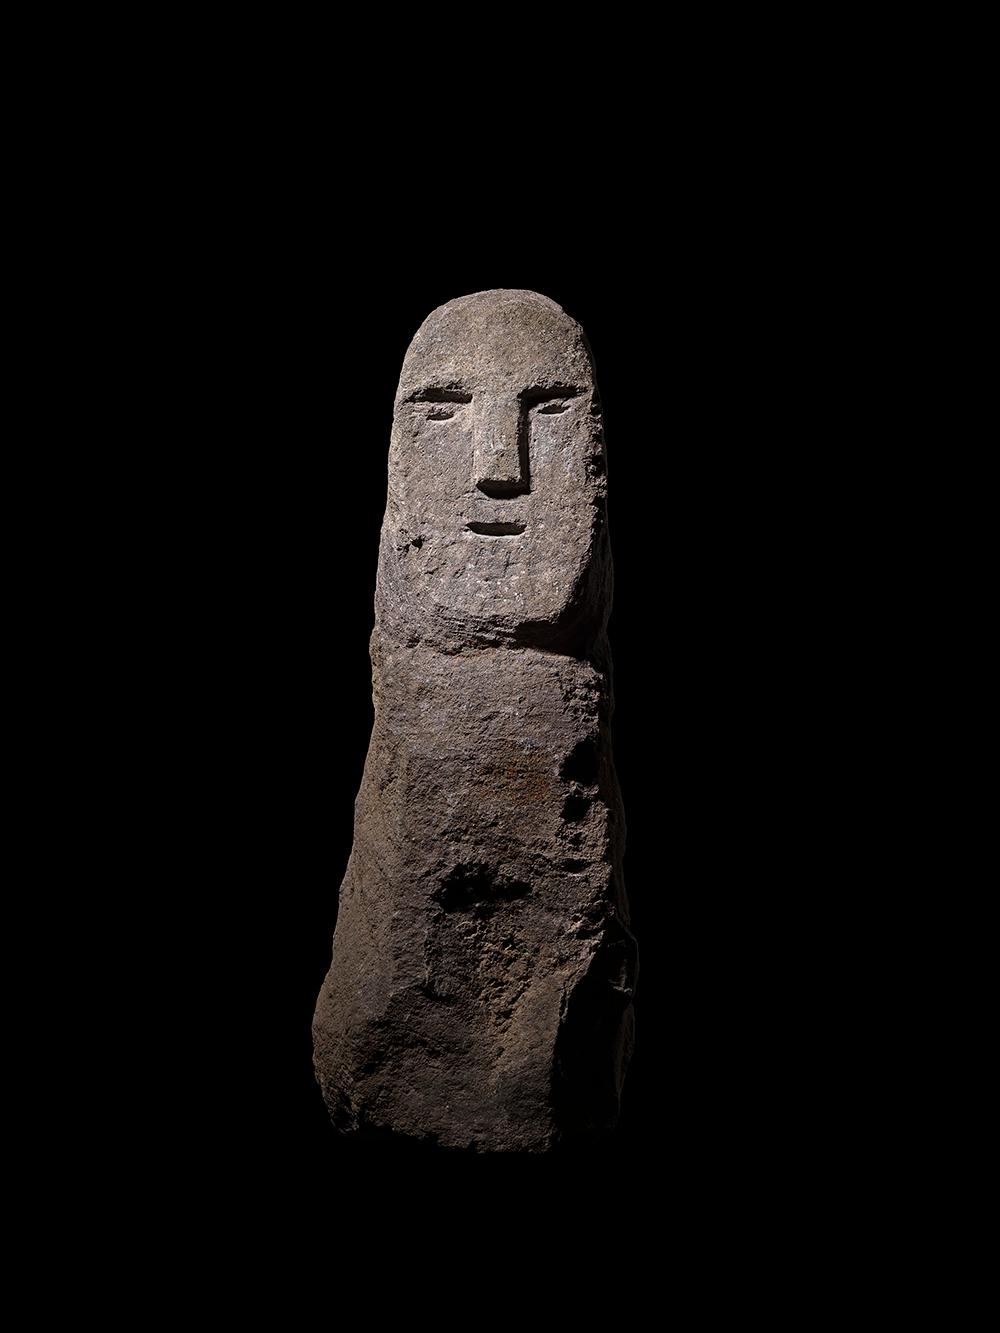 Grande stèle anthropomorphe en granit sculpté, divisée en deux régions distinctes du corps et du visage. Le corps est constitué d'un seul bloc non articulé, mais les traits du visage sont soulignés par de fortes lignes sculptées. Une forme en T